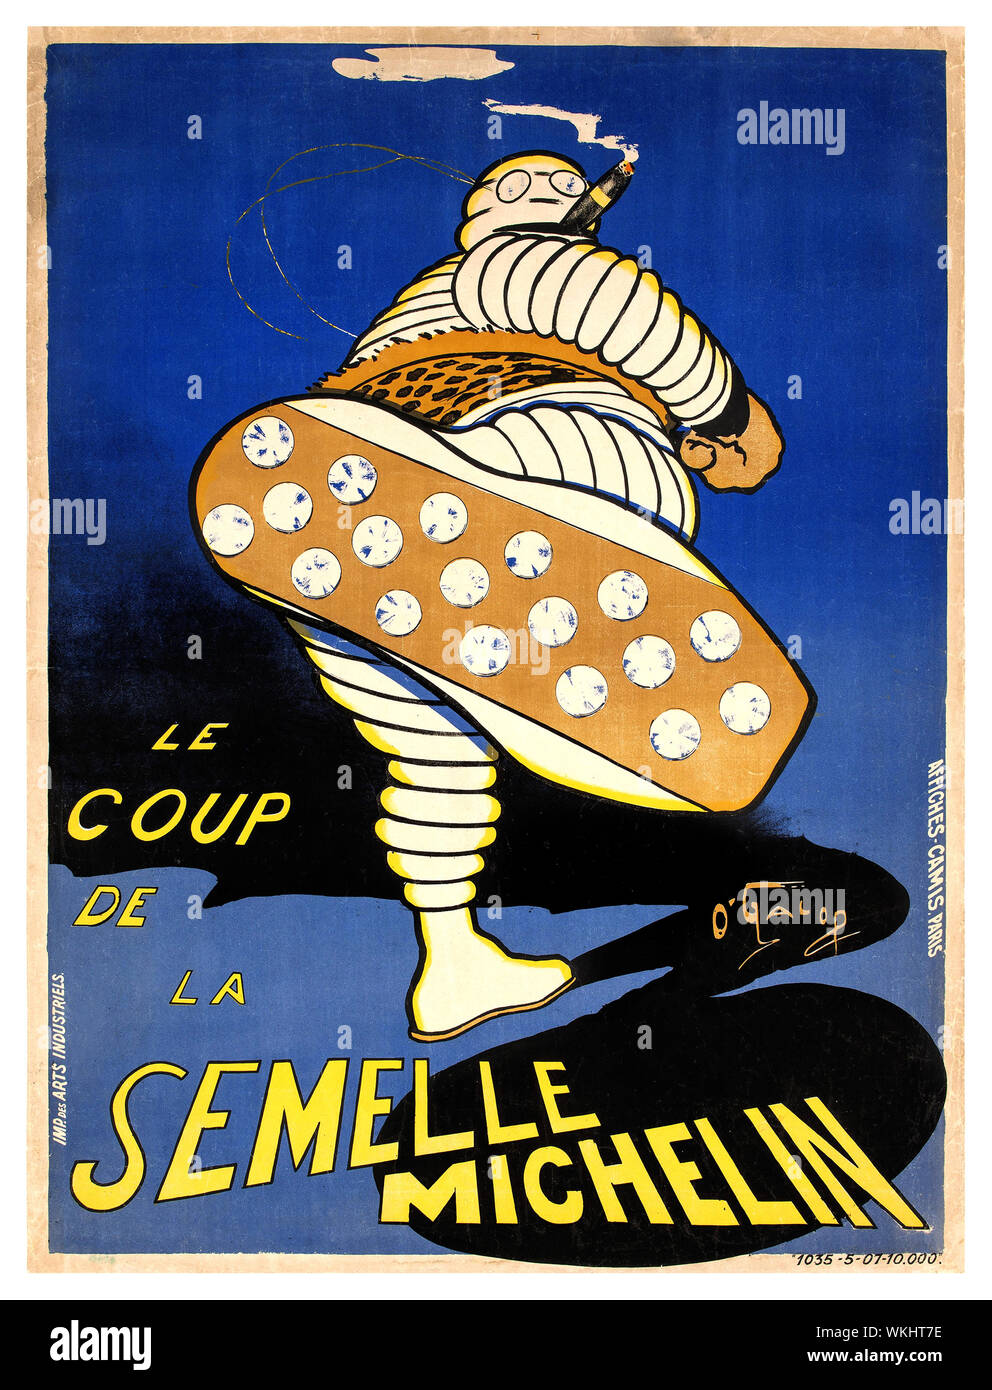 MICHELIN Vintage 1900 poster publicitario "Le Coup de la Semelle Michelin" , 1905 litografía en color "Michelin" exclusiva de un neumático con espárragos. El nuevo "Michelin" único con rodadura hobnails fue introducido para mejorar la adherencia del neumático y la vida útil de los neumáticos. O'Galop, seudónimo de Marius Rossillon era un artista francés y dibujante, mejor conocido por la creación de Bibendum, el Hombre Michelin Foto de stock